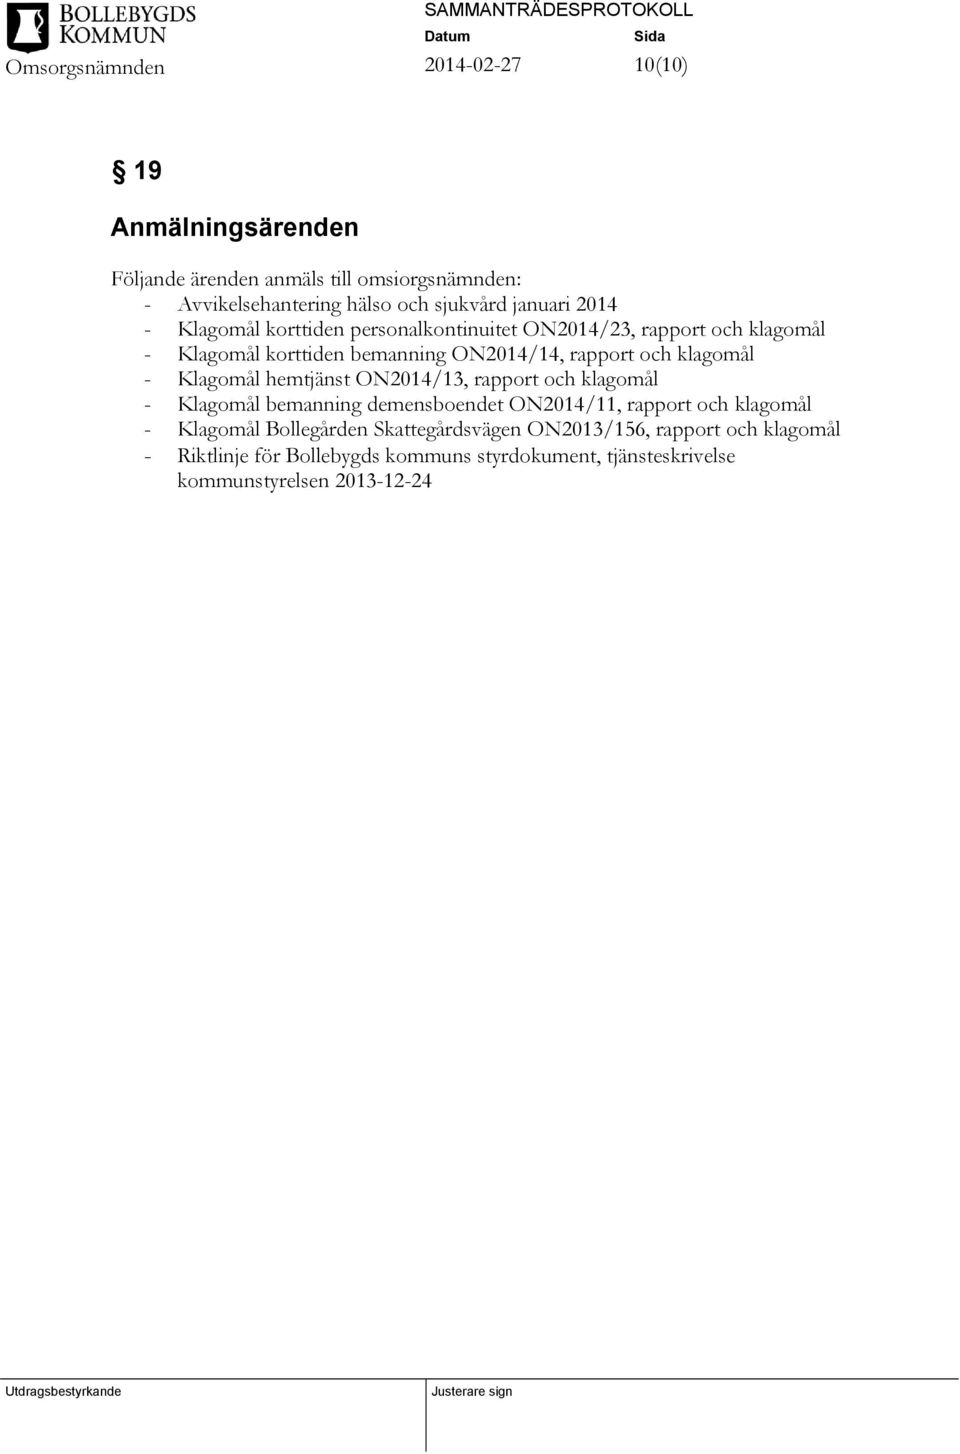 Klagomål hemtjänst ON2014/13, rapport och klagomål - Klagomål bemanning demensboendet ON2014/11, rapport och klagomål - Klagomål